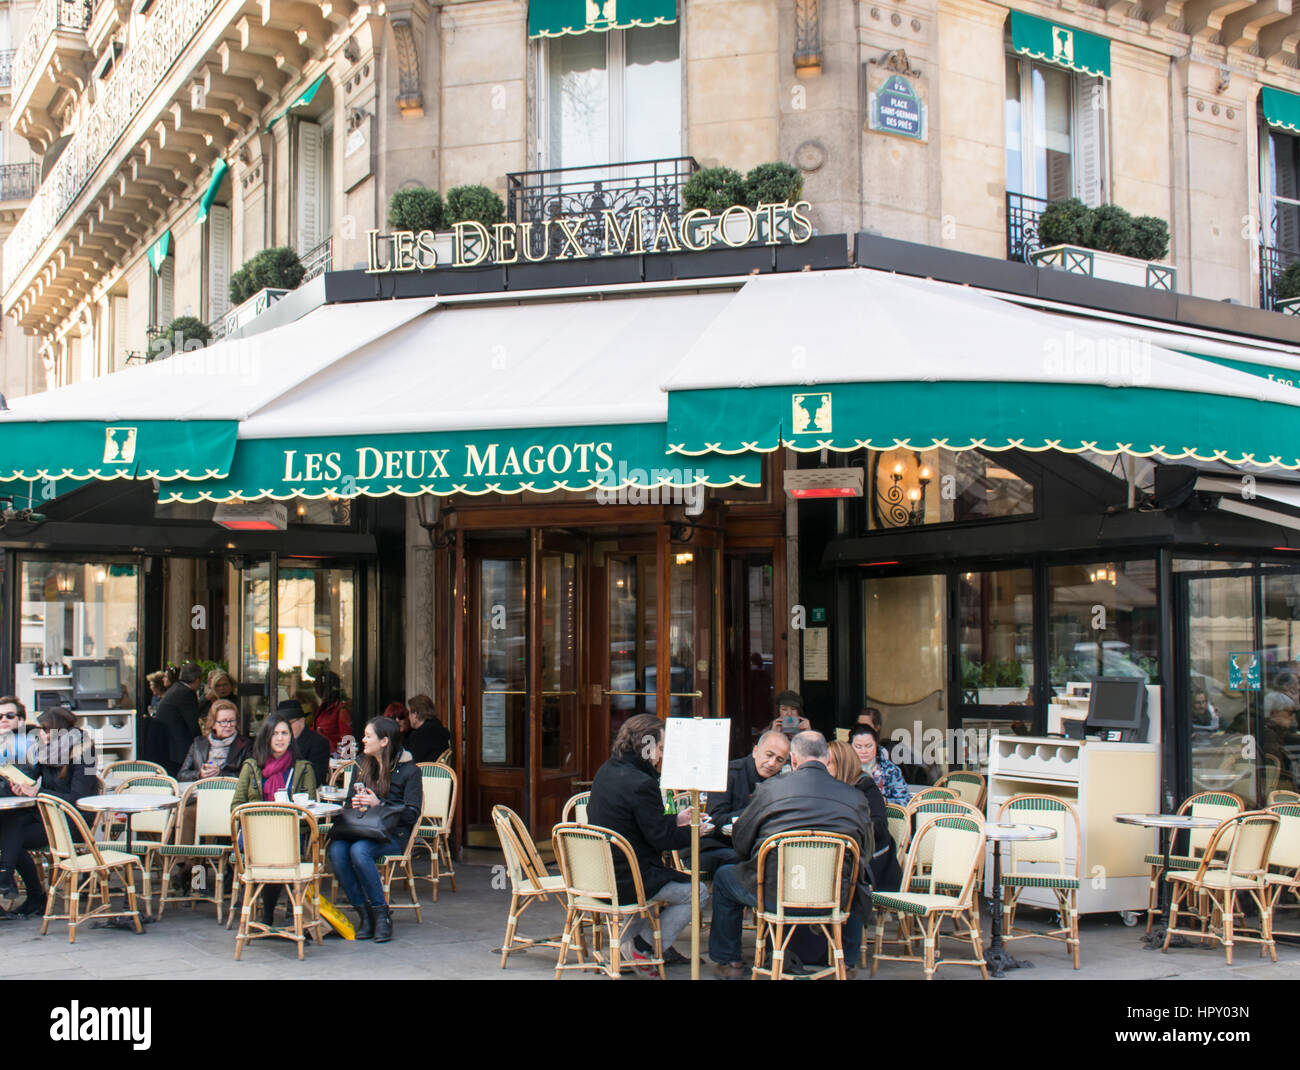 Les Deux Magots cafe, Paris, France, Europe Stock Photo